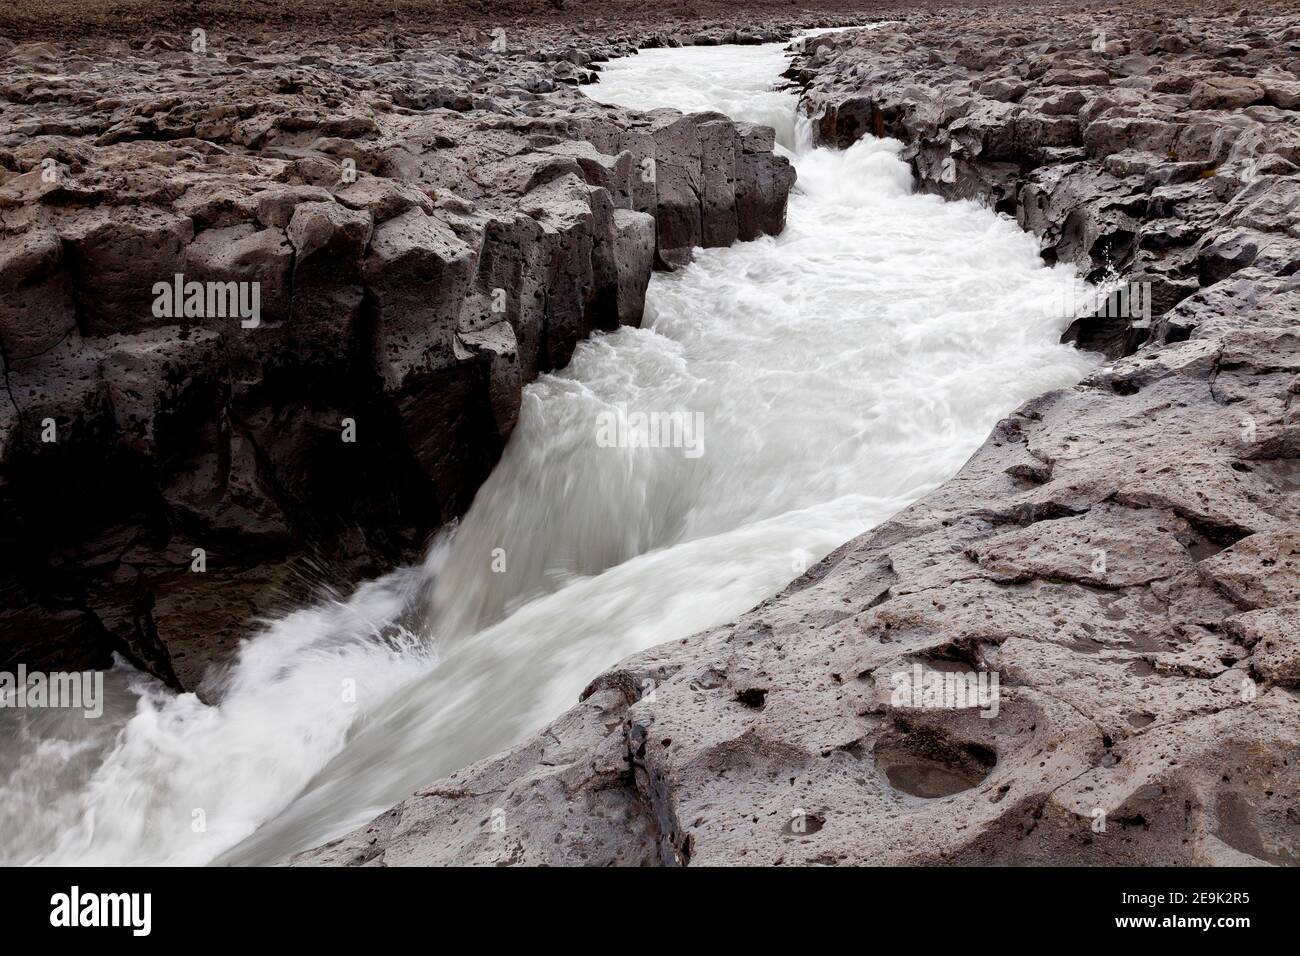 Hvítá rivière i paysage de lave, district de Borgarfjörður, ouest de l'Islande. Banque D'Images